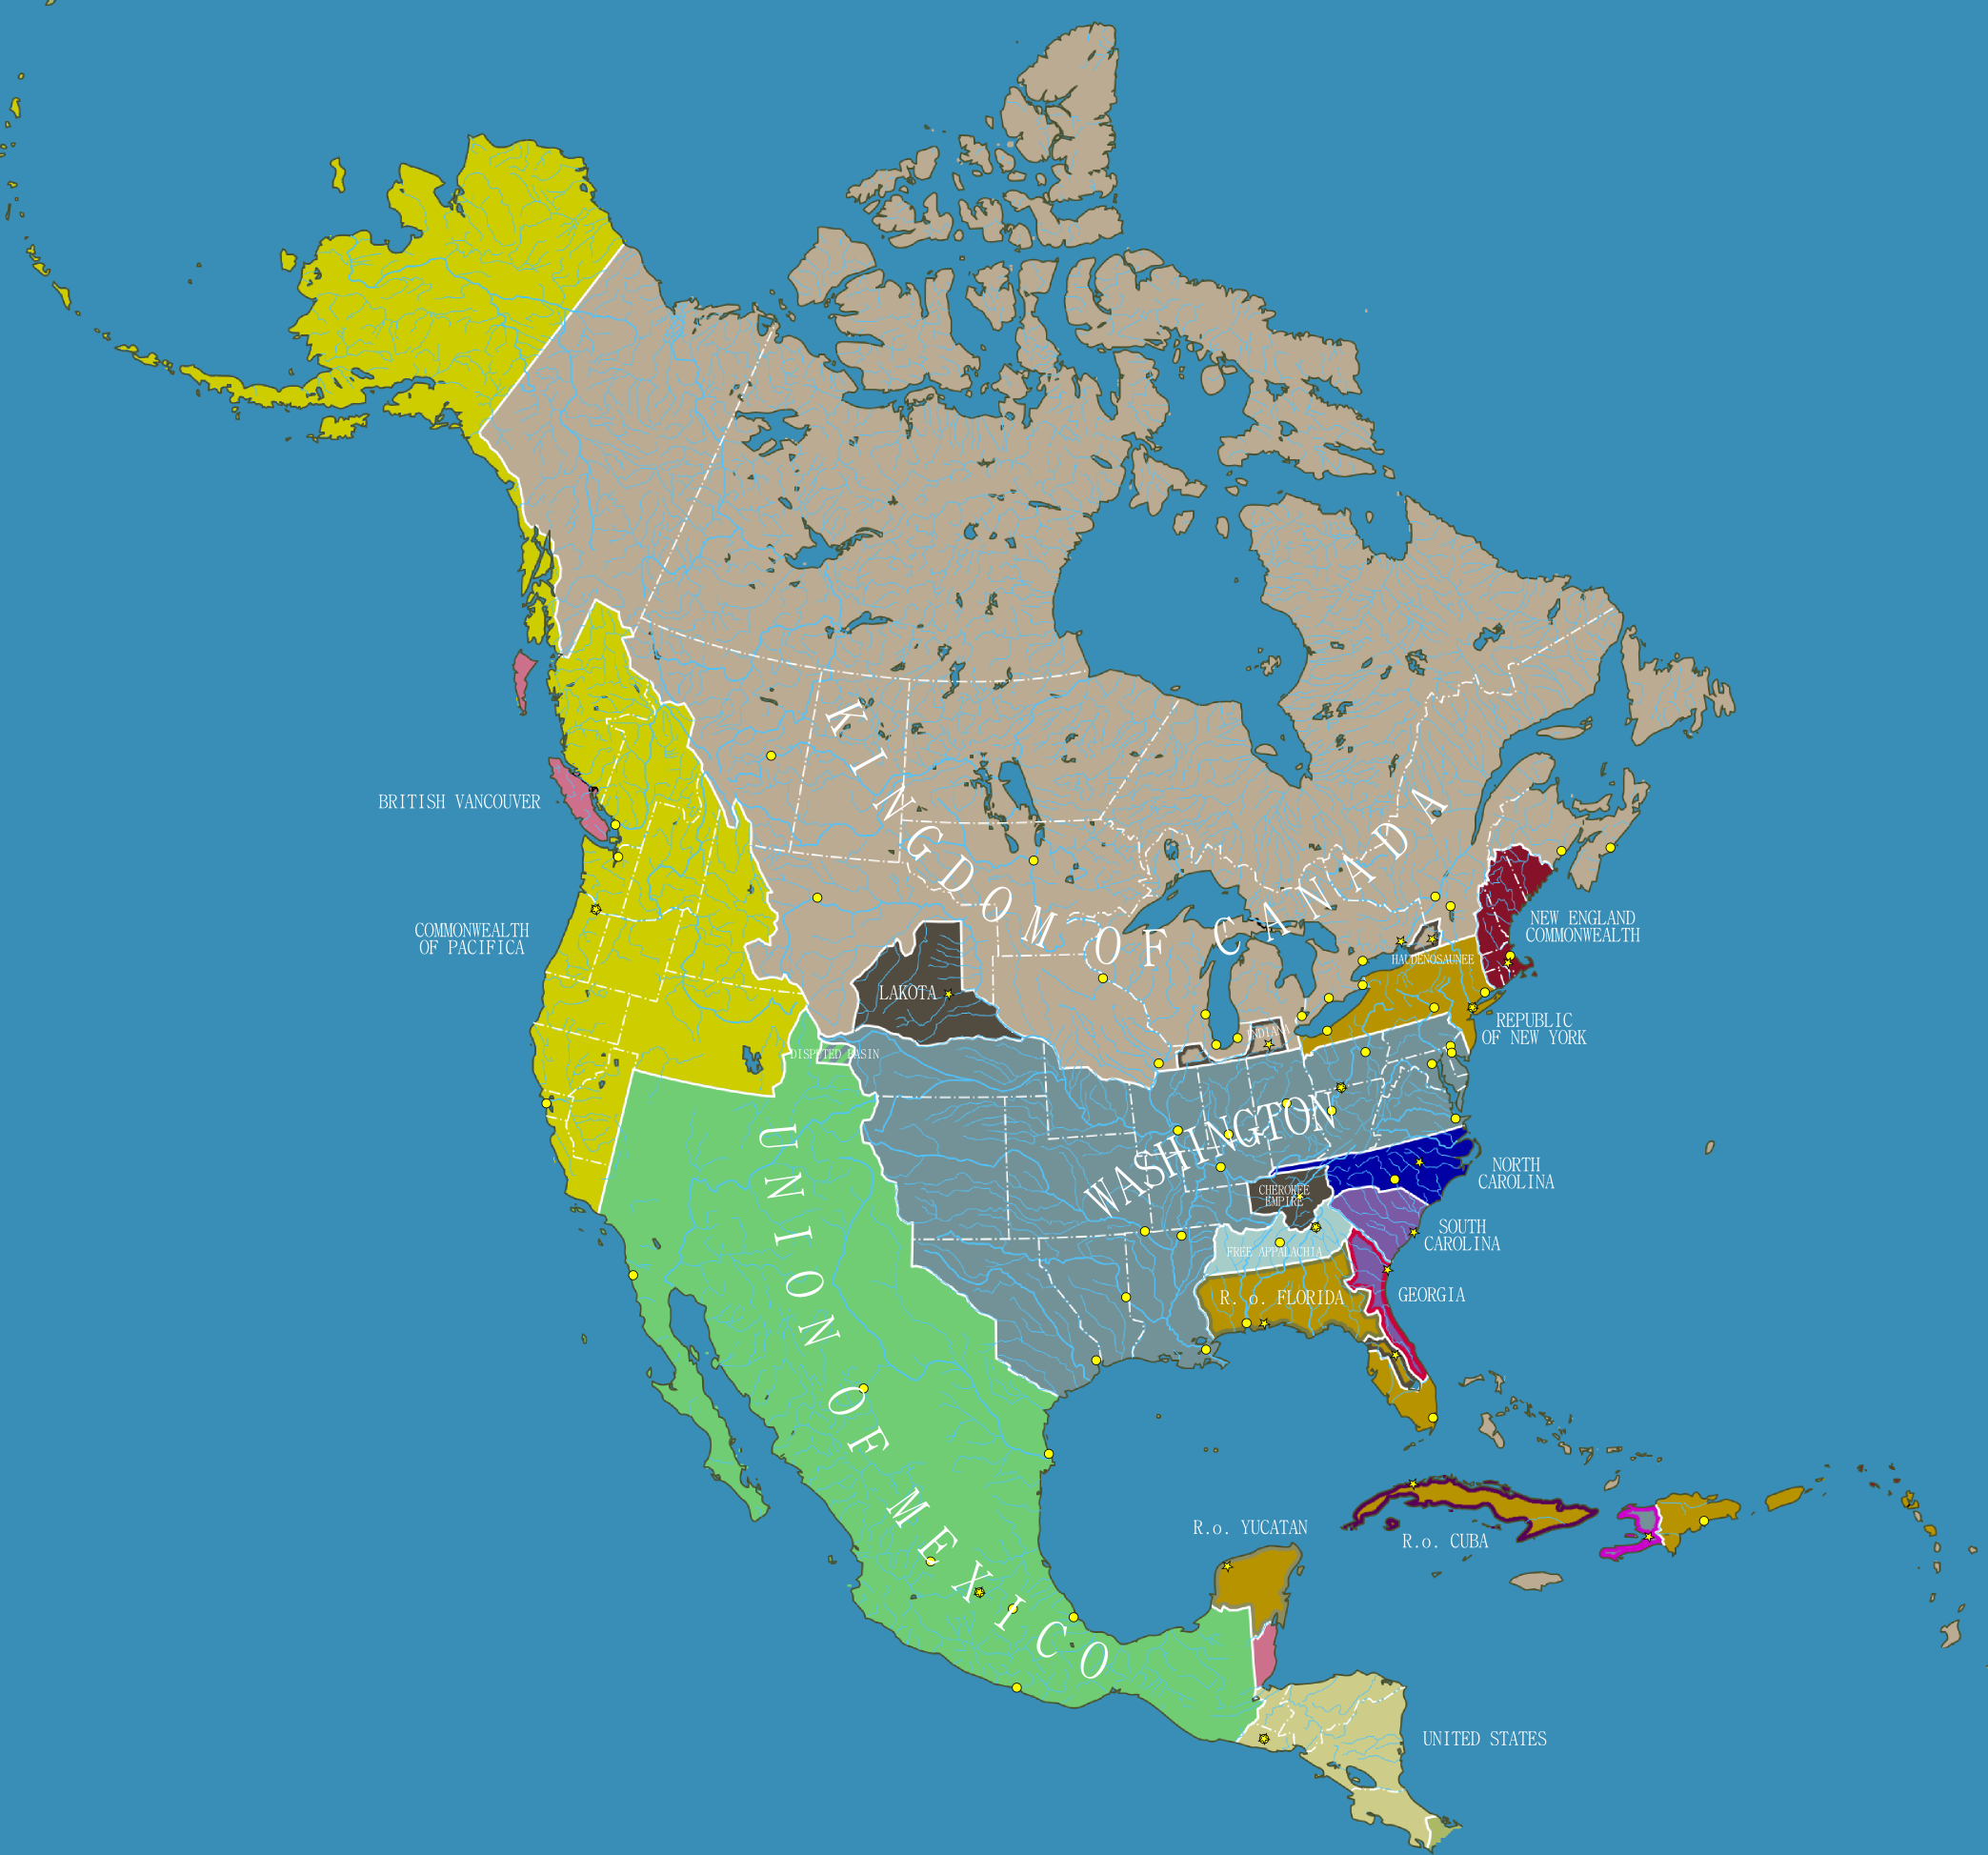 Северная америка работа с картой